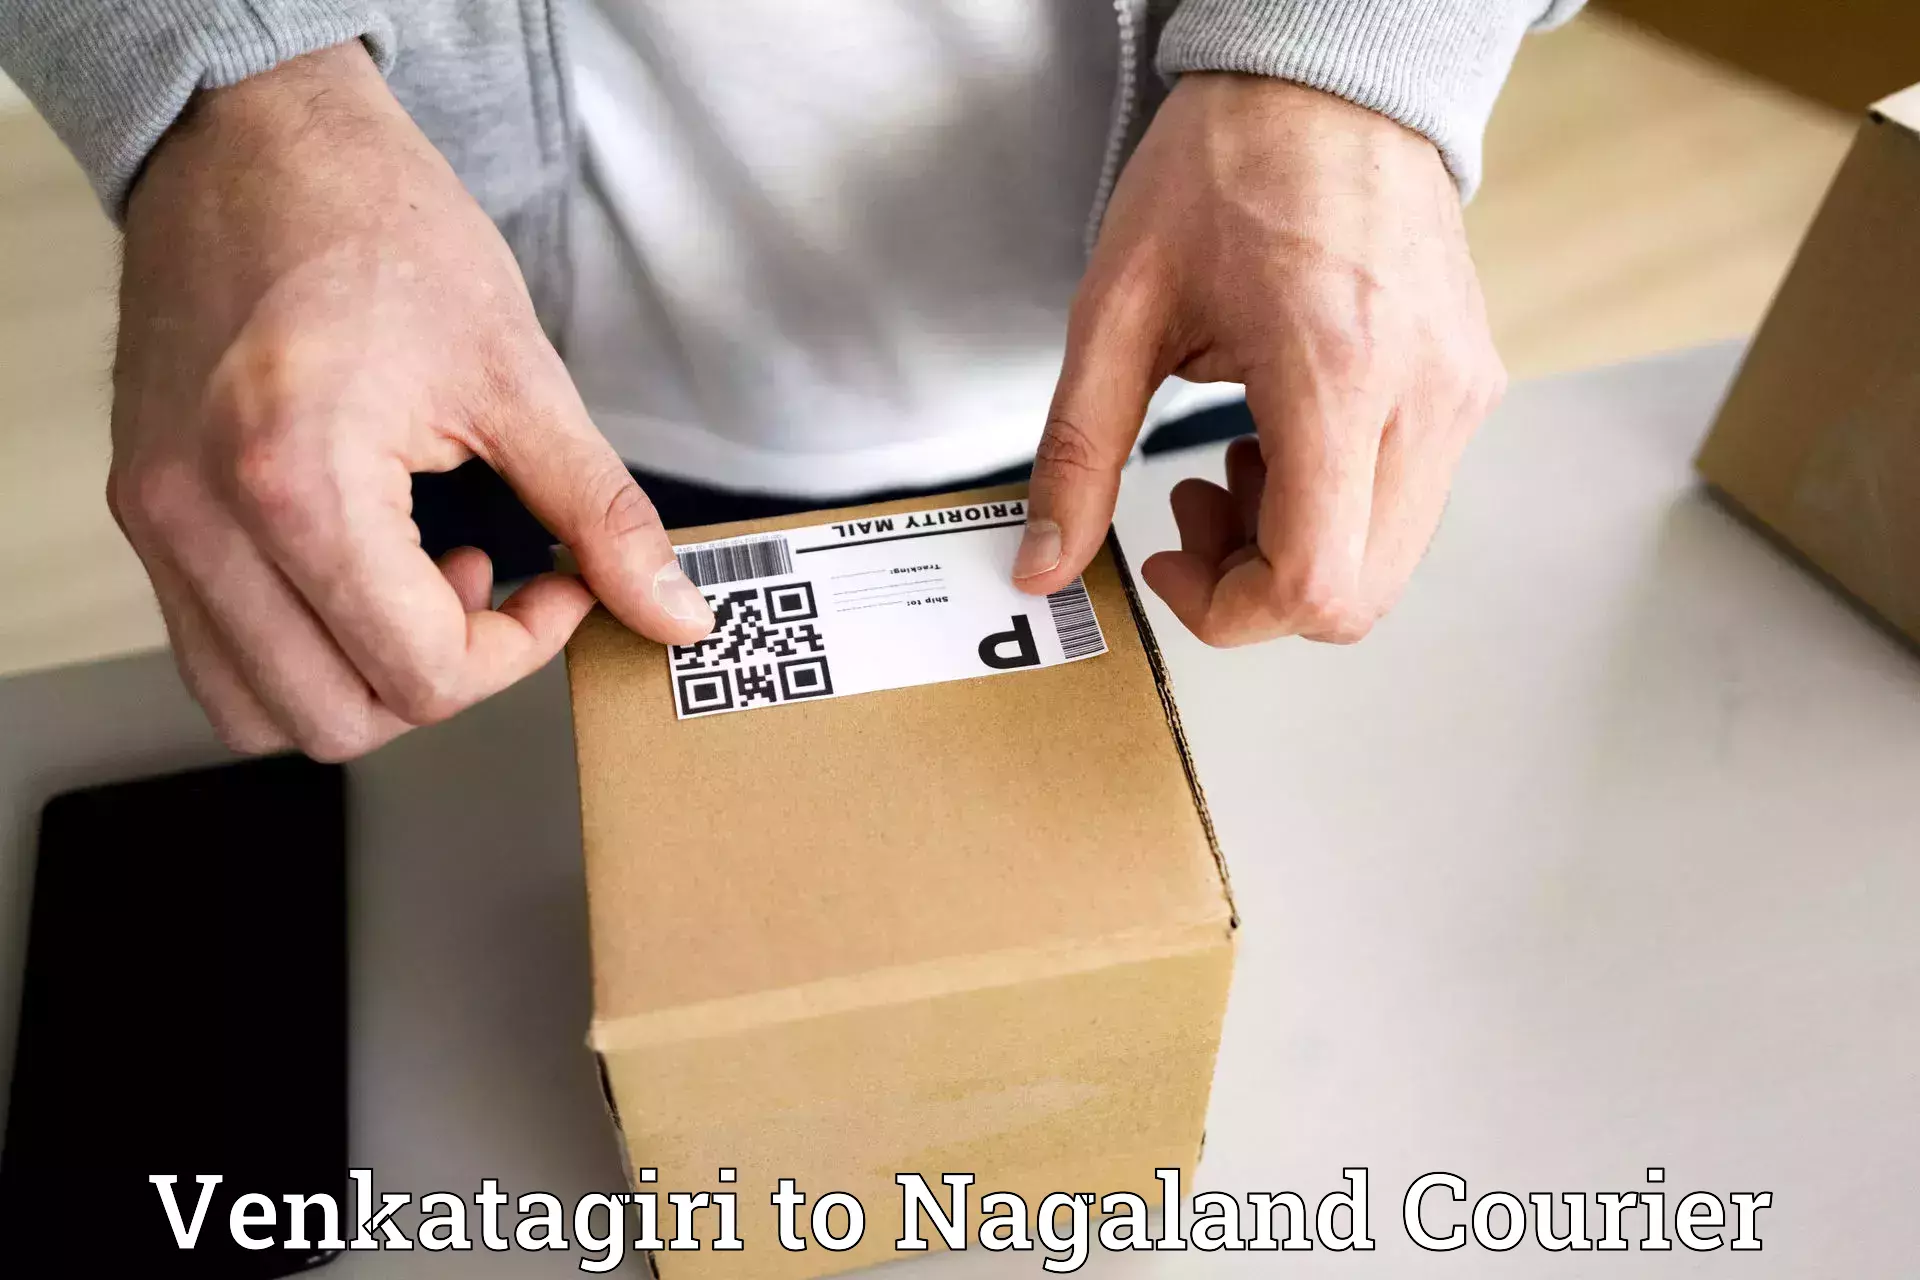 Cash on delivery service Venkatagiri to Phek